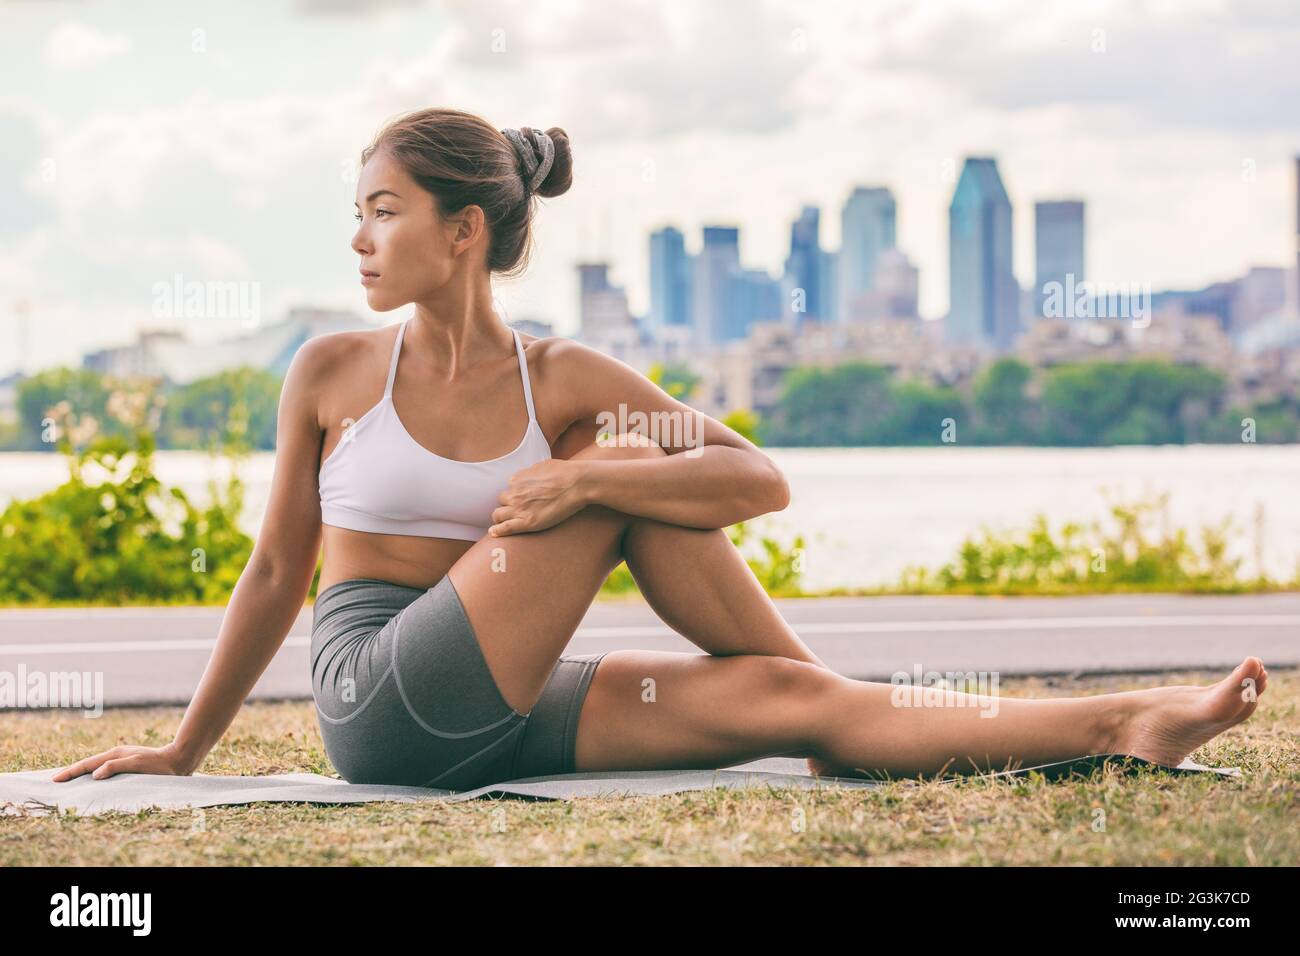 Yoga stretch esercizio fisico fit Asian donna che si allunga verso la schiena per la salute della colonna vertebrale sulla città fitness all'aperto classe nel parco. Torsione spinale seduta Foto Stock